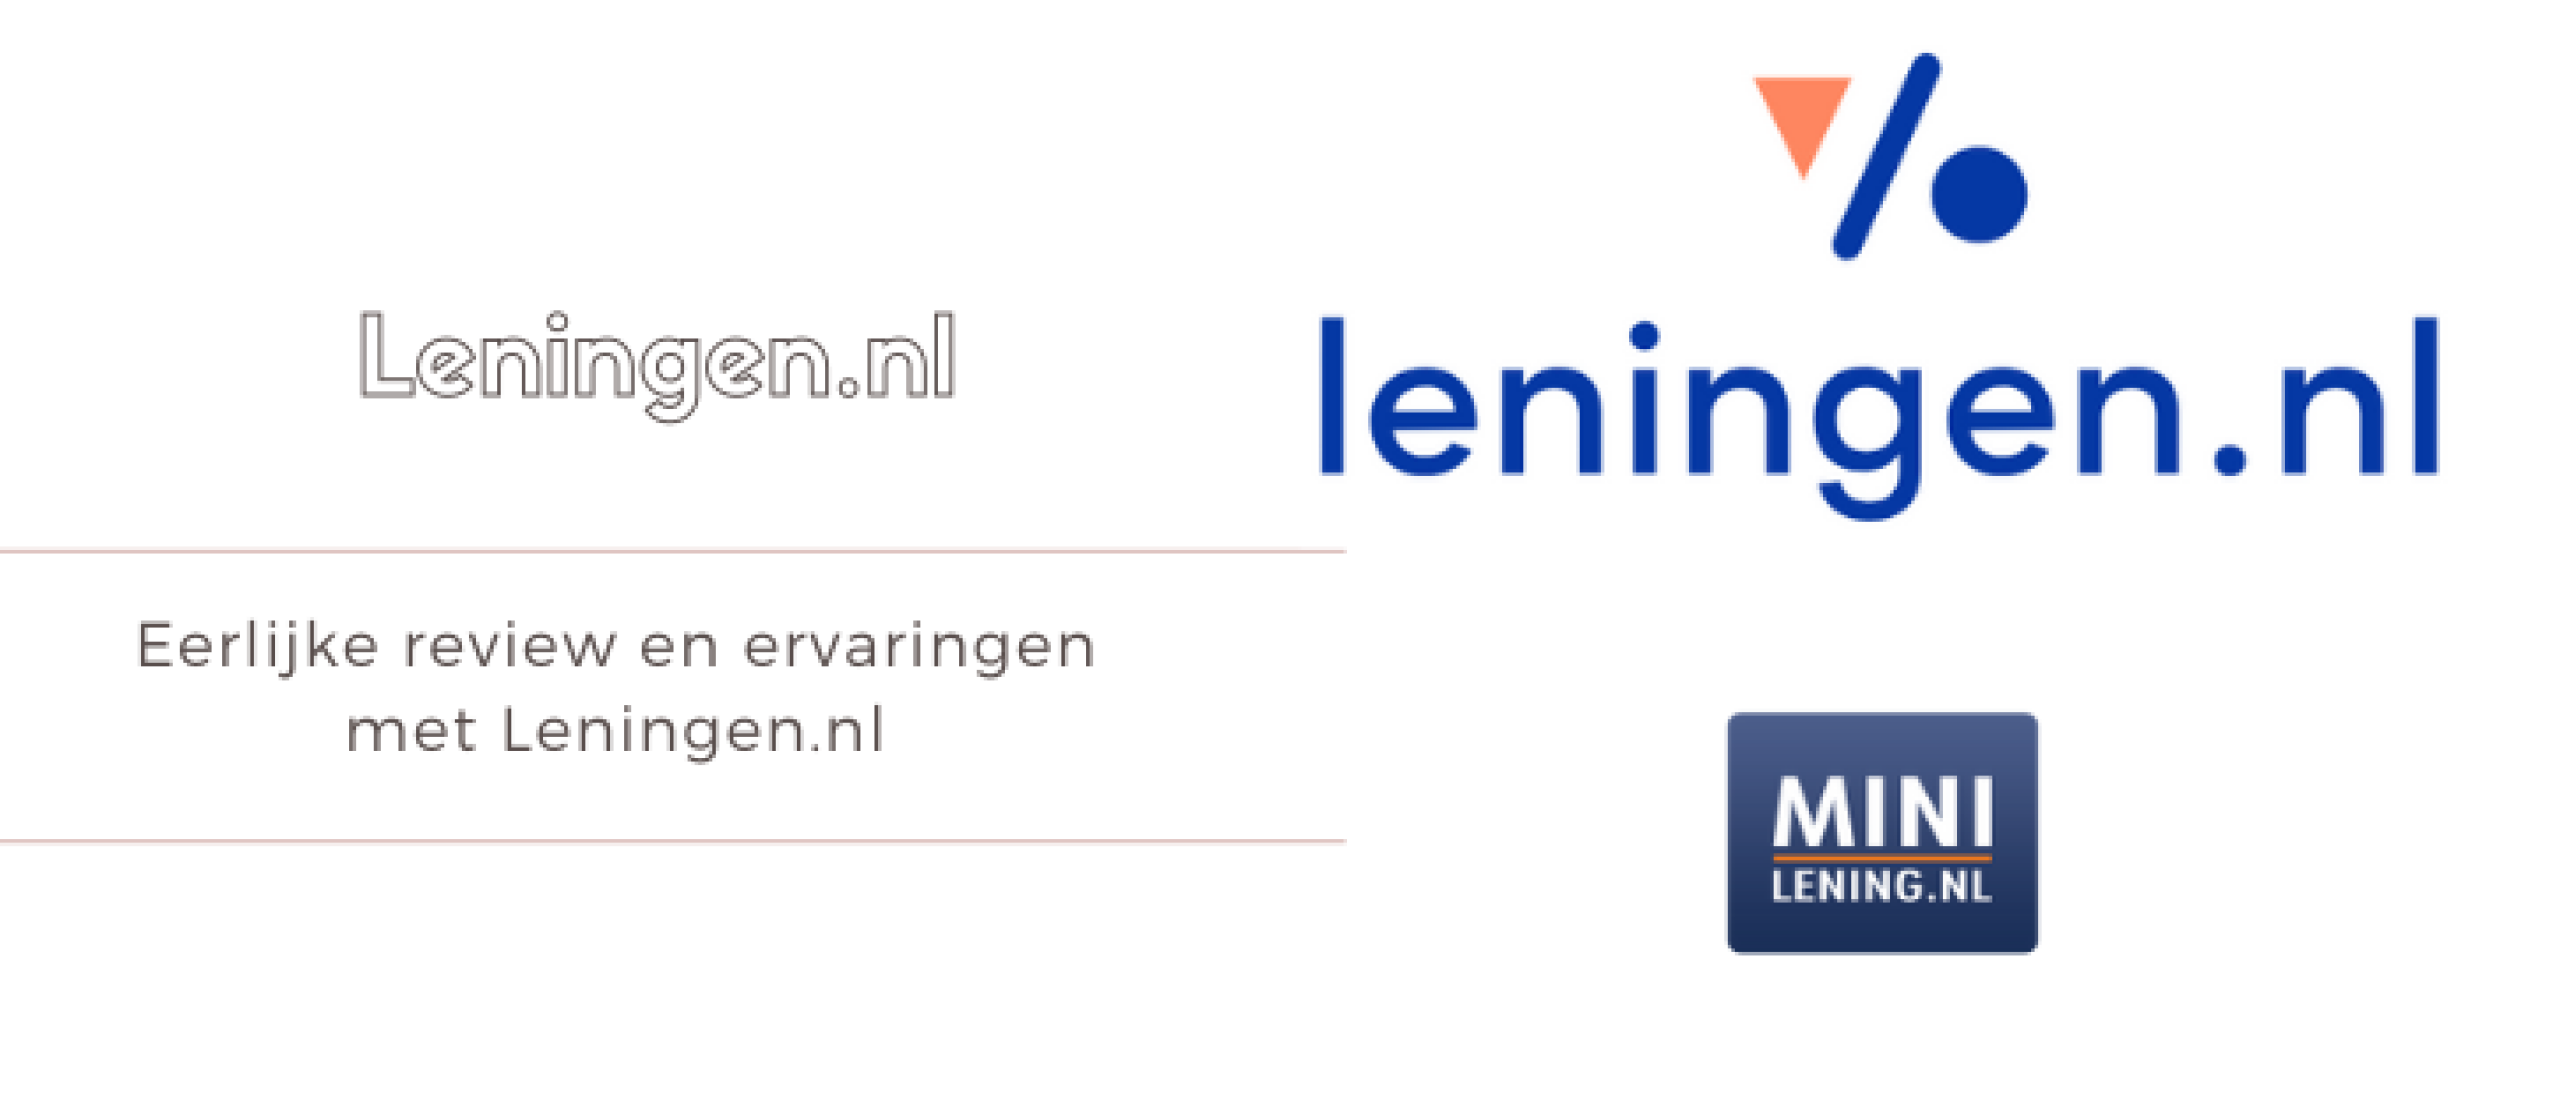 Leningen.nl Review & Ervaringen [2022] Minilening.nl